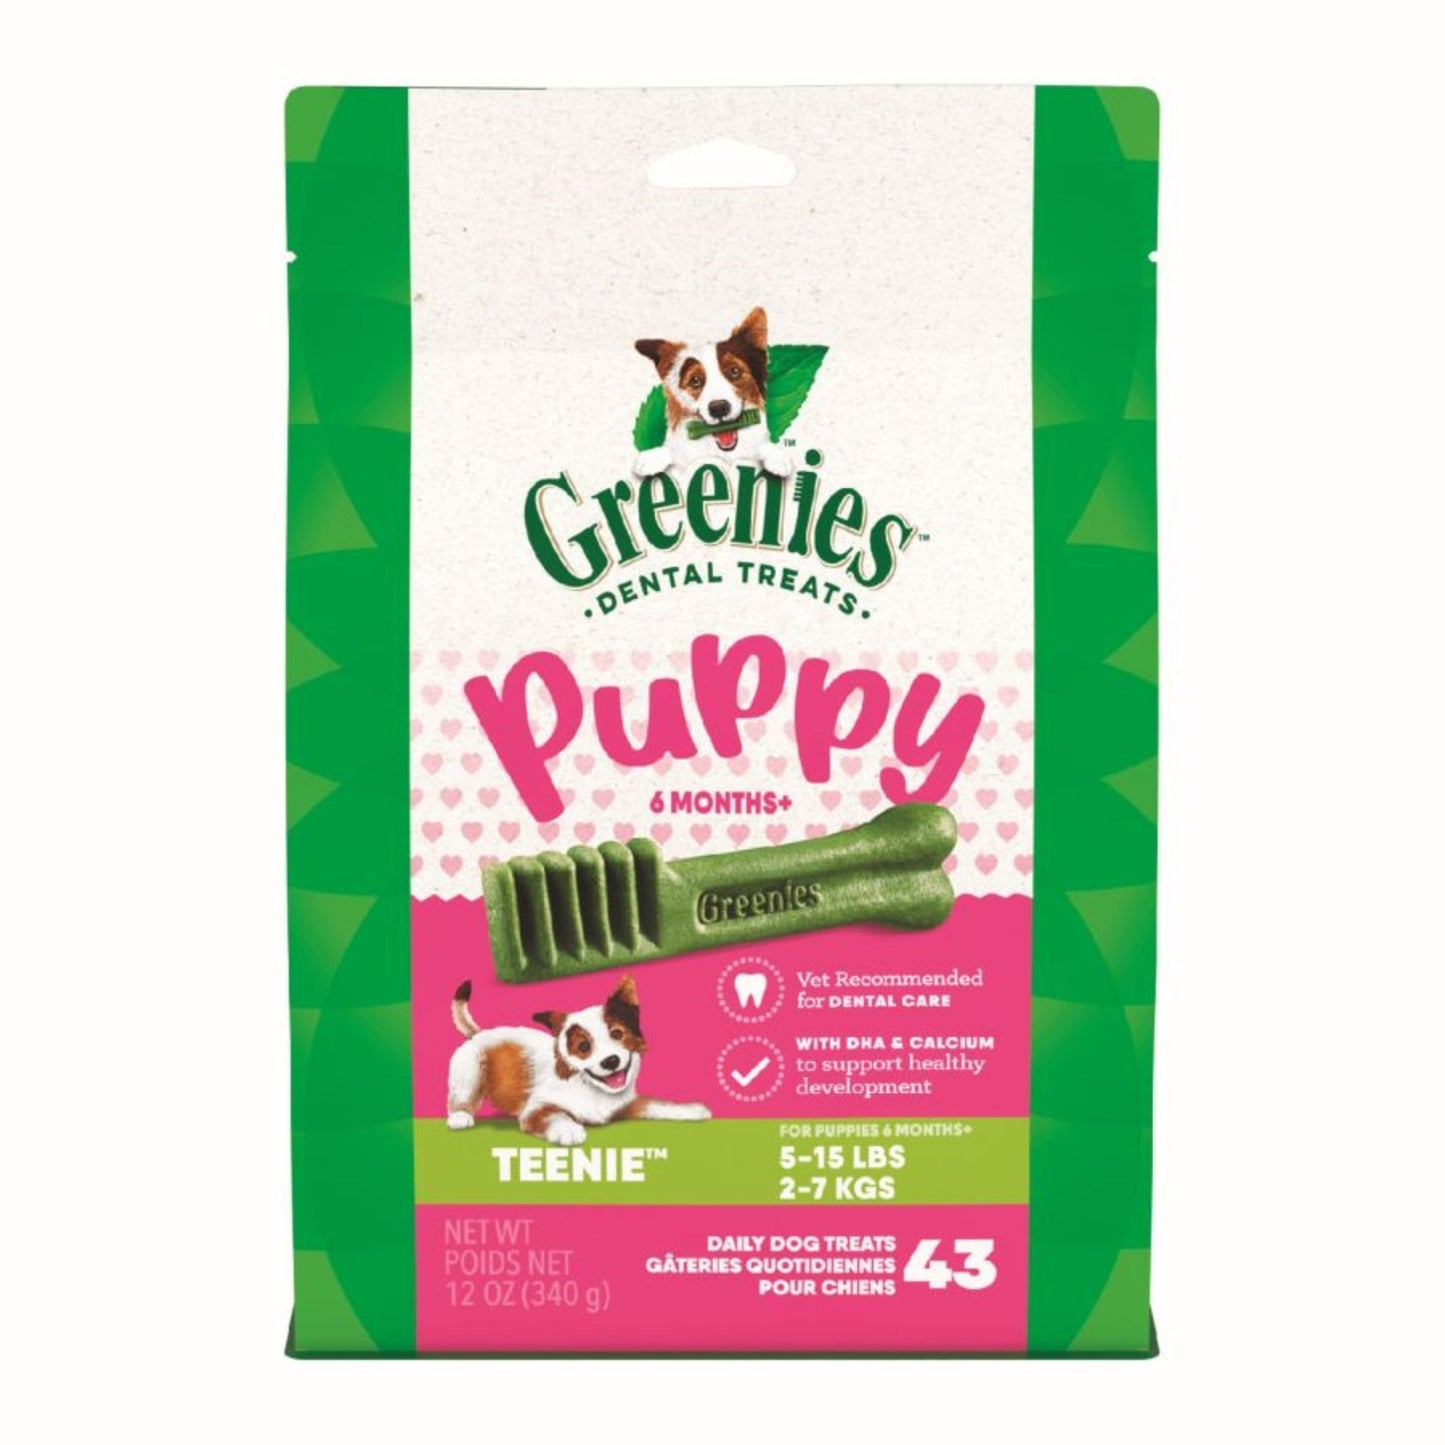 Greenies Puppy 6+ Months Dog Dental Treats Teenie, 1ea/12oz.